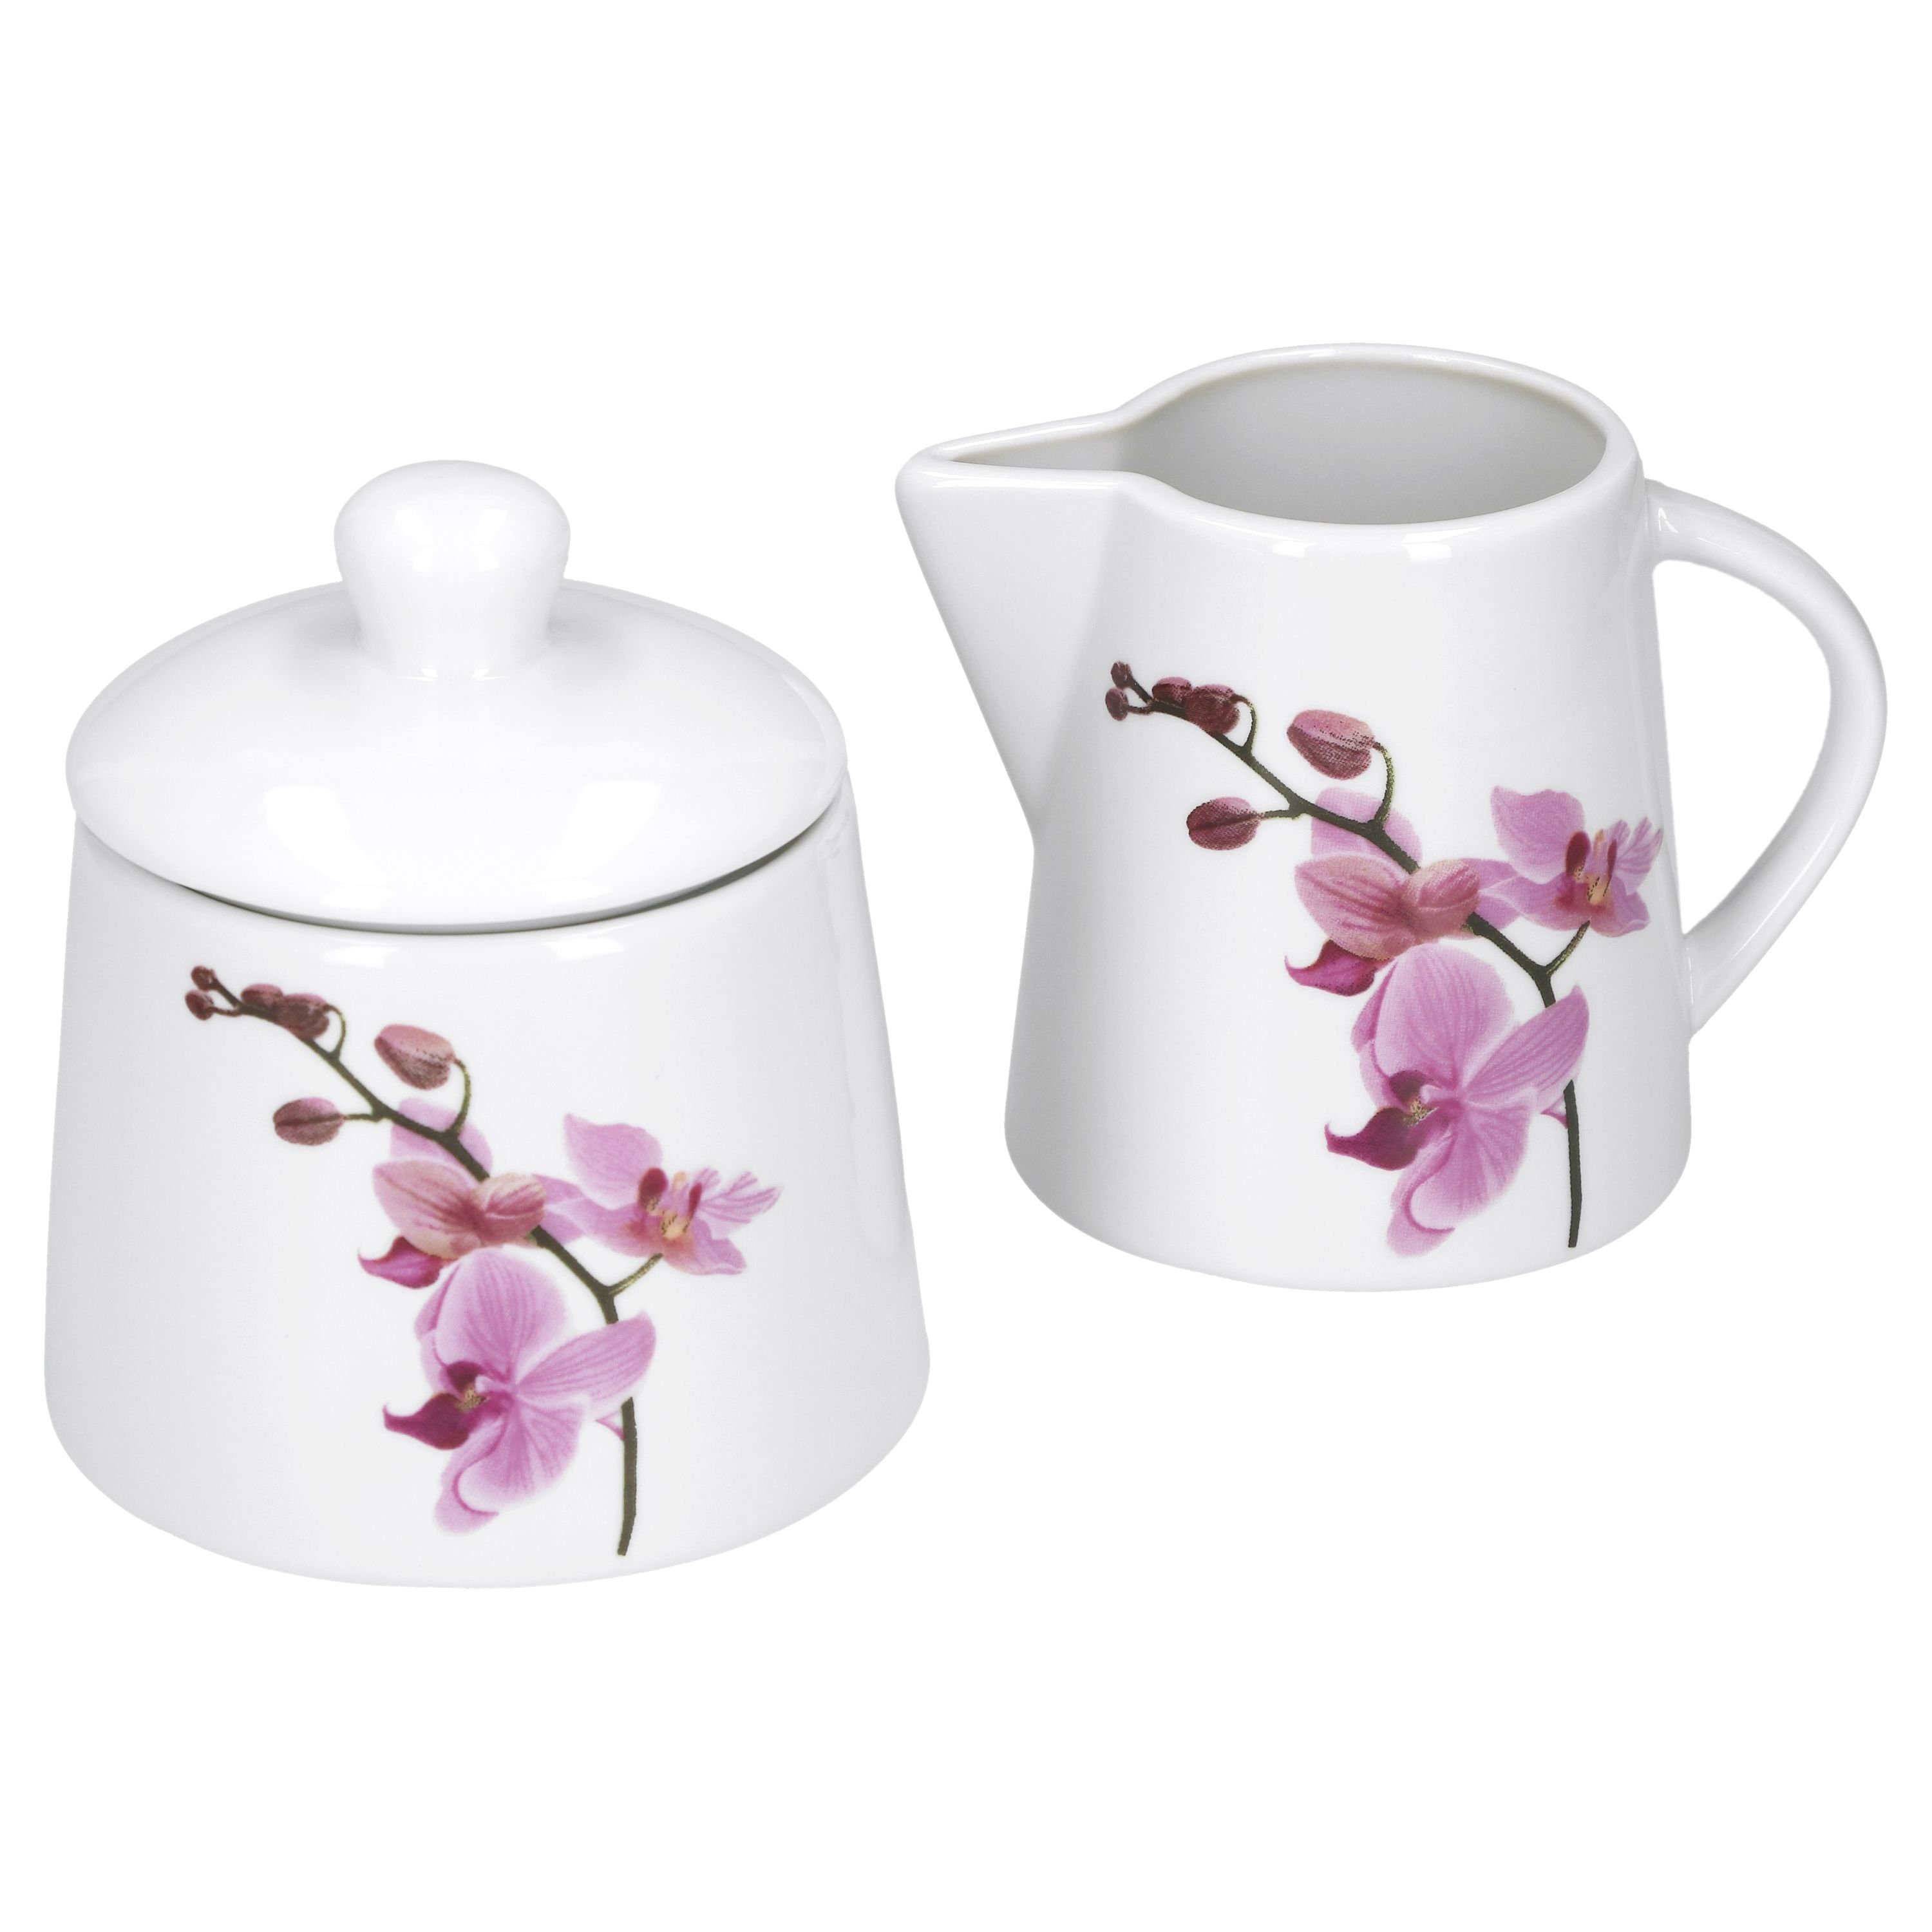 van Well Milch- und Zuckerset Kaffeeergänzungsset Milchkännchen & Zuckerdose Kyoto Orchidee, Porzellan